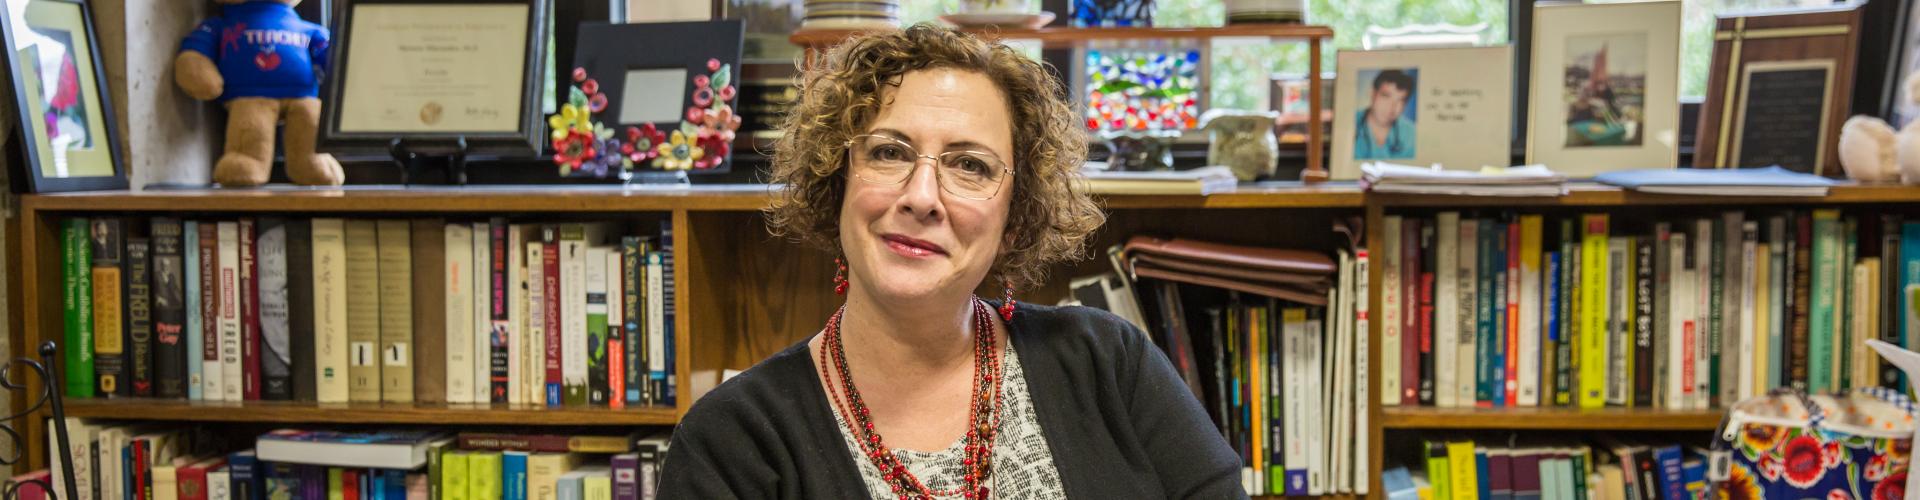 Arcadia University professor Marianne Miserandino